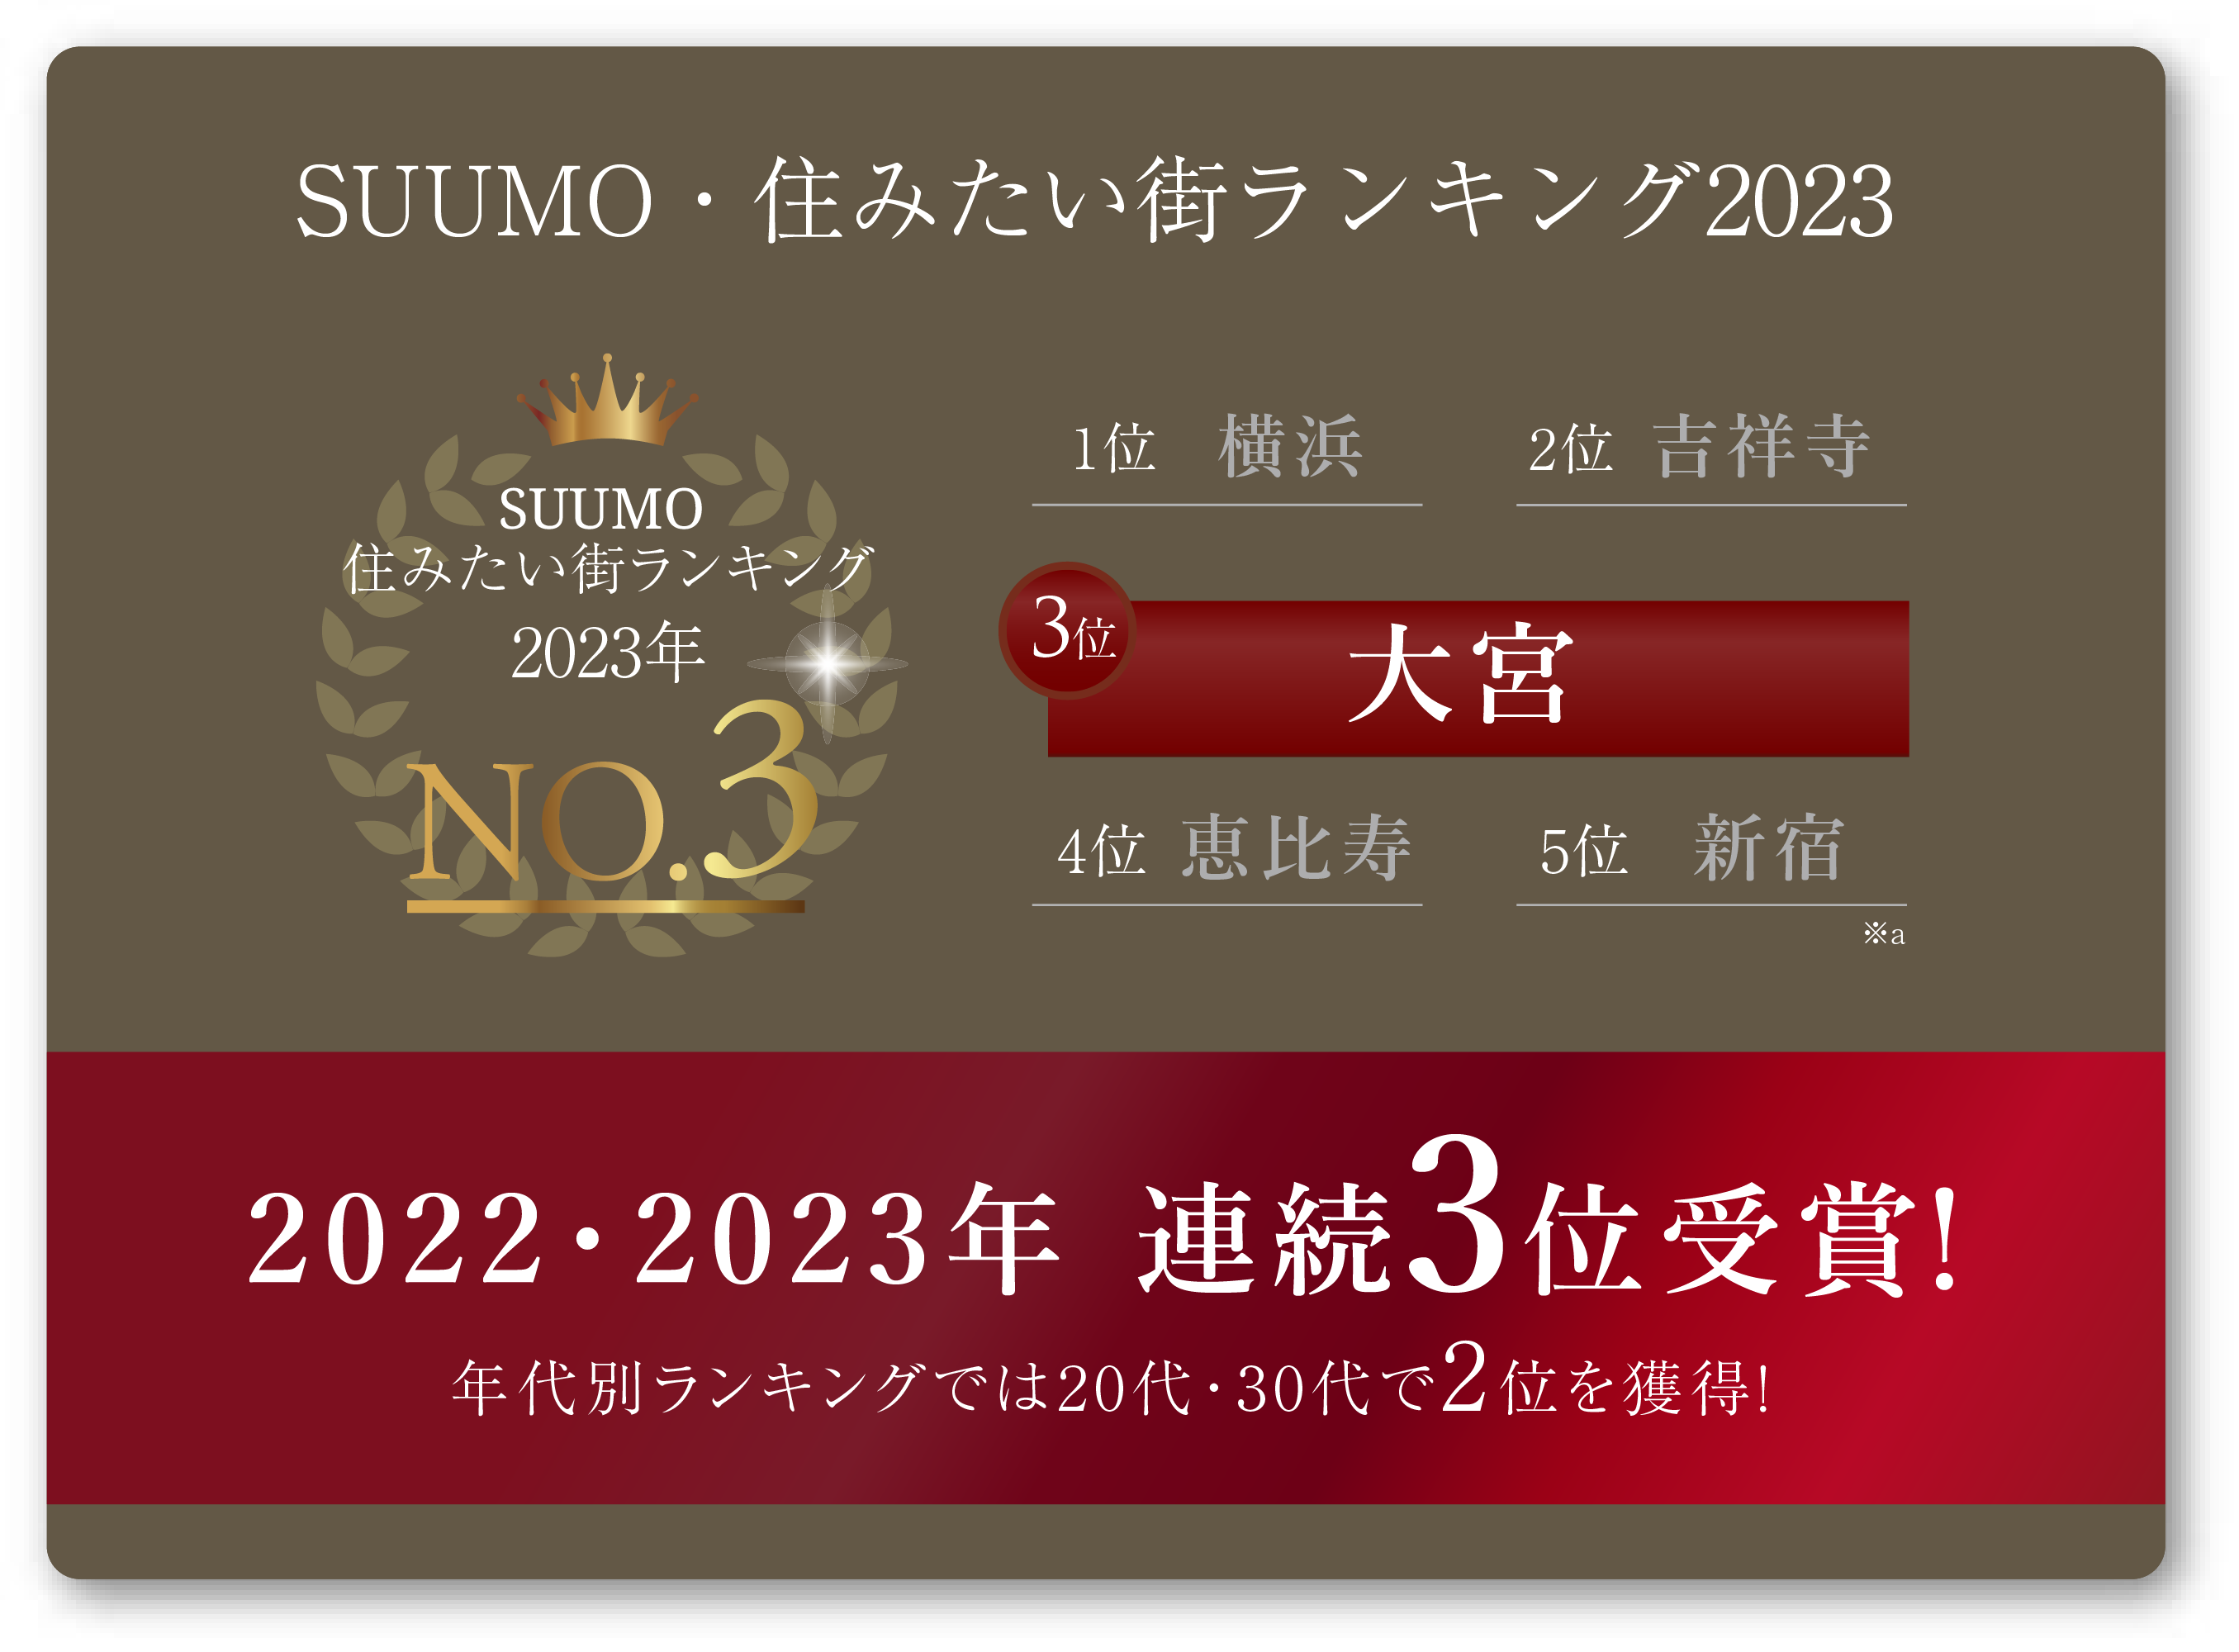 大宮はsuumo住みたい街ランキング2022年No.3